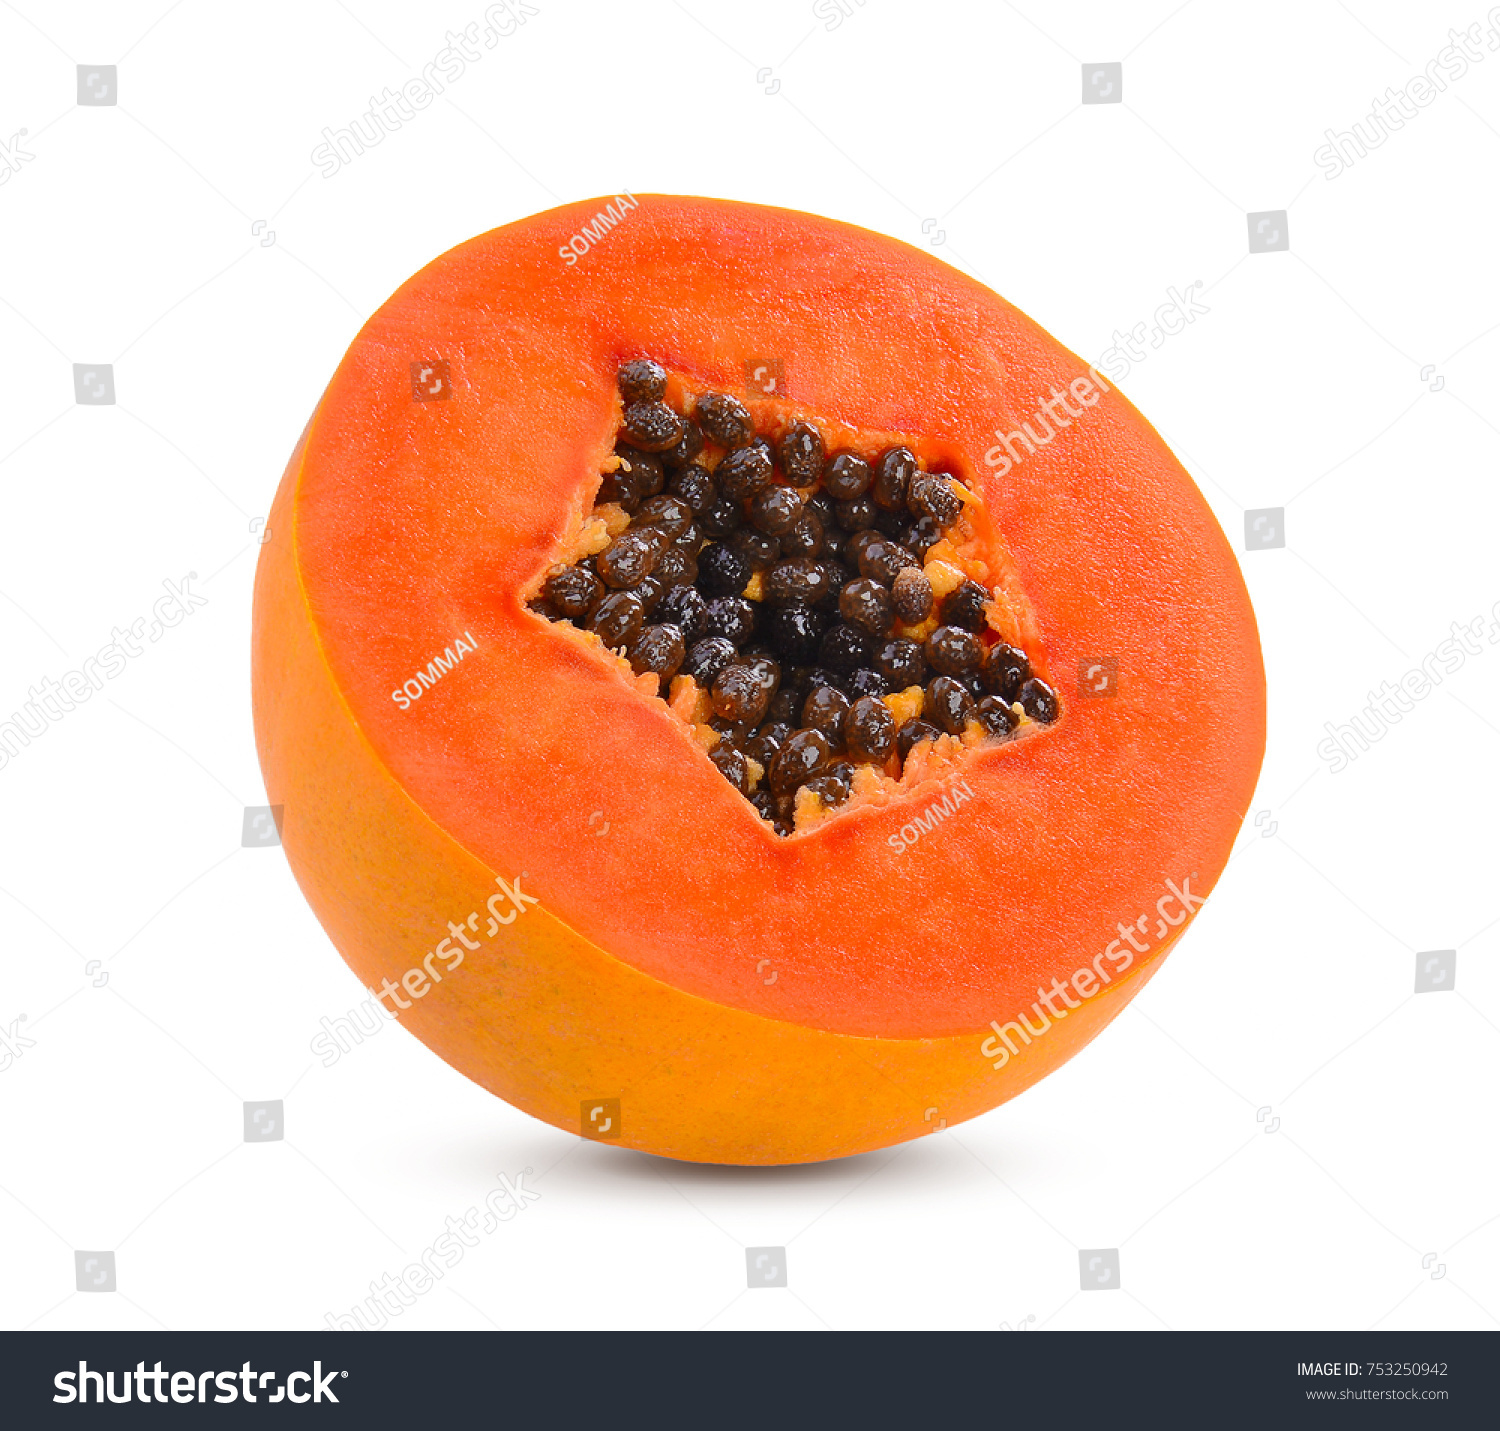 Sliced Ripe Papaya Seed On Background Stock Photo 753250942 ...